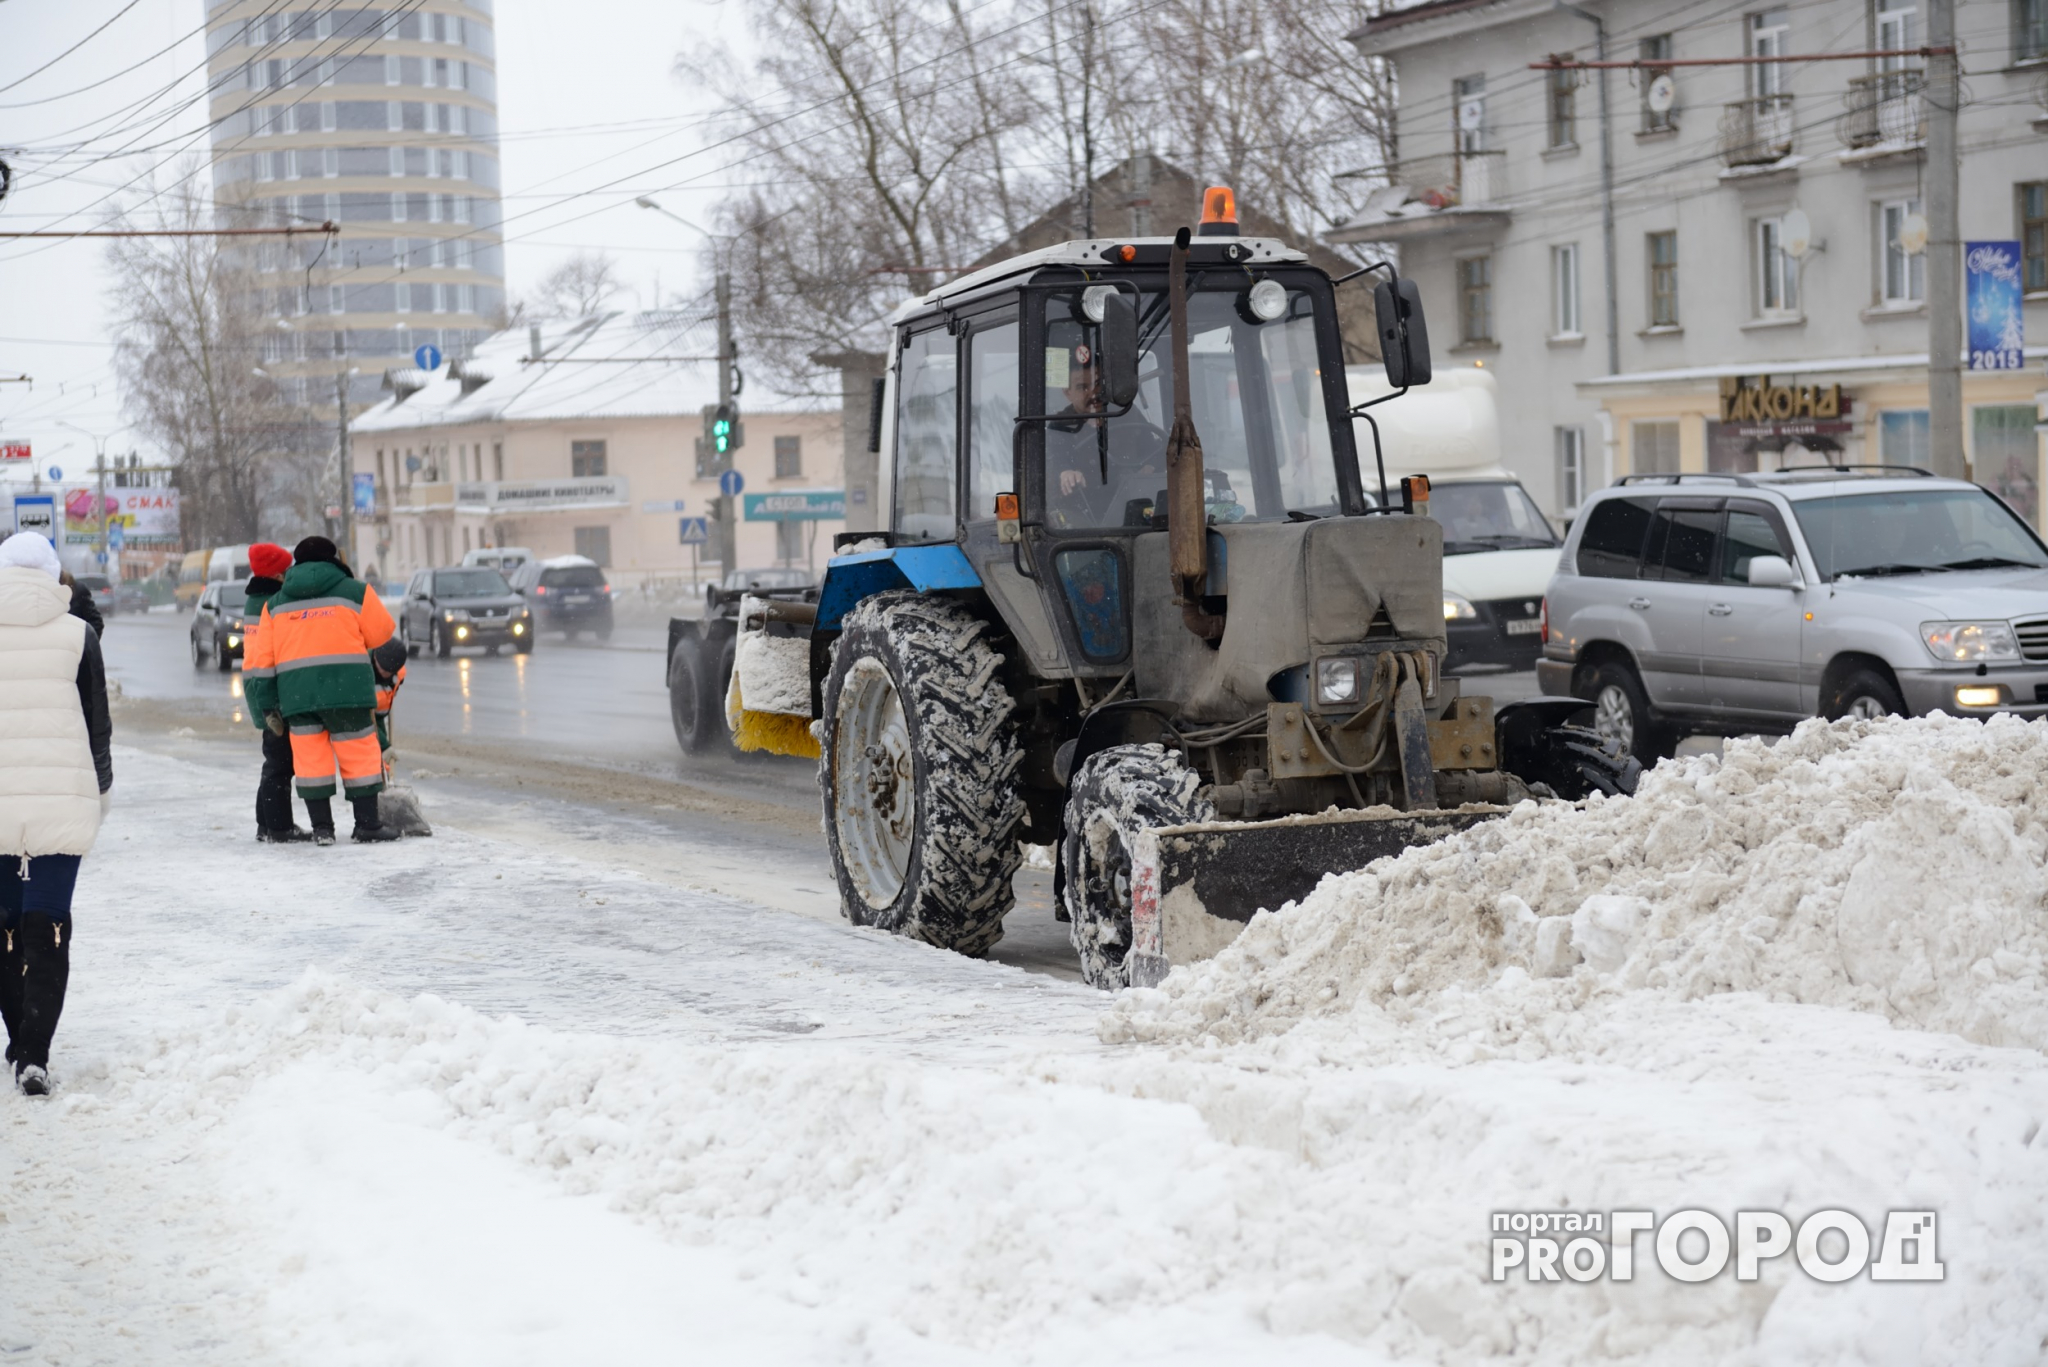 Мэр Ярославля рассказал "Pro городу", какую улицу собственноручно очистит от снега